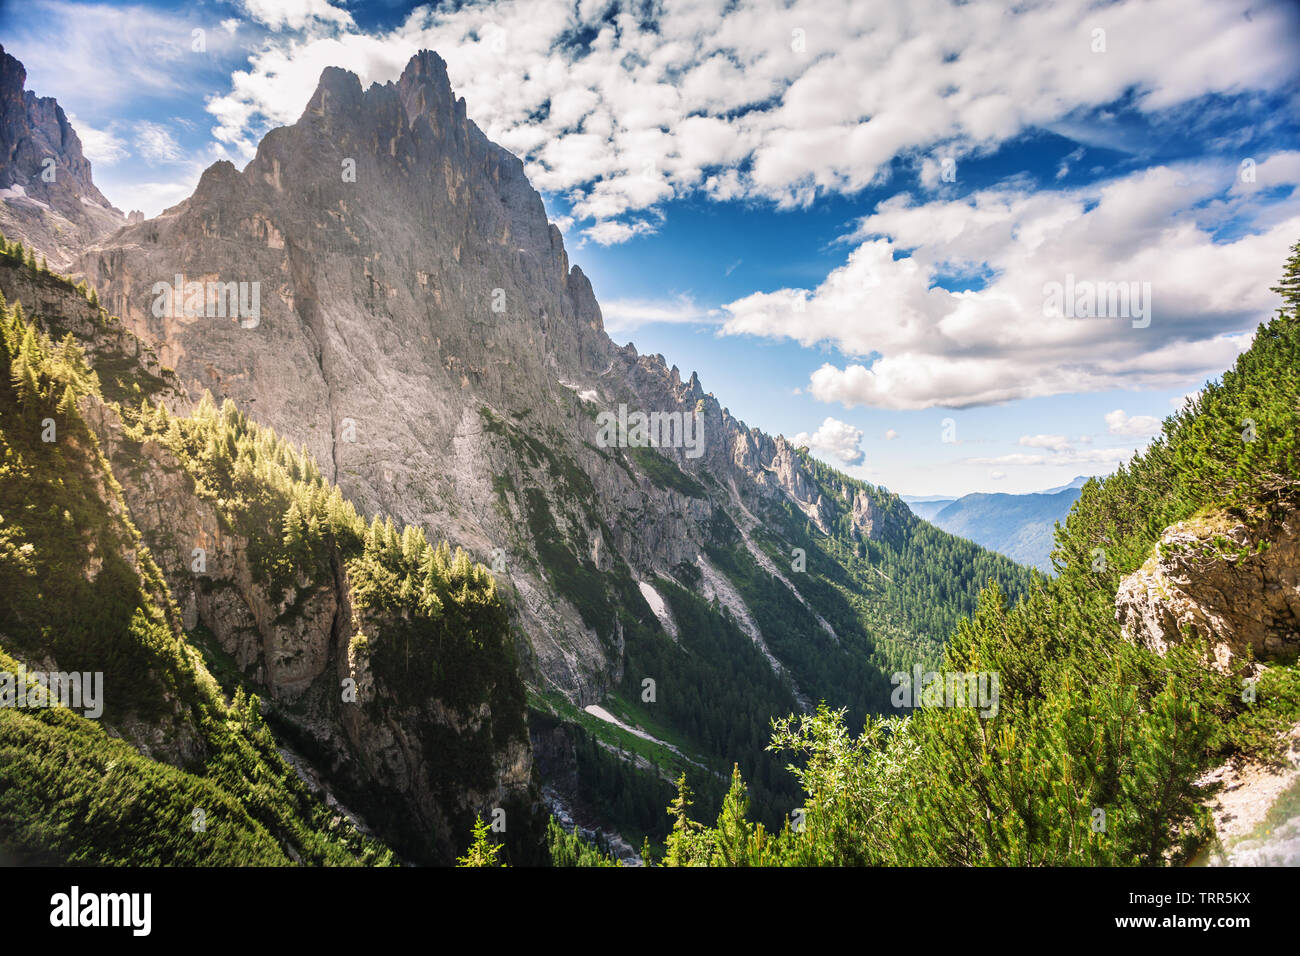 Dolomite mountains of San Martino di Castrozza in Trentino-Allto Adige, northern Italy Stock Photo